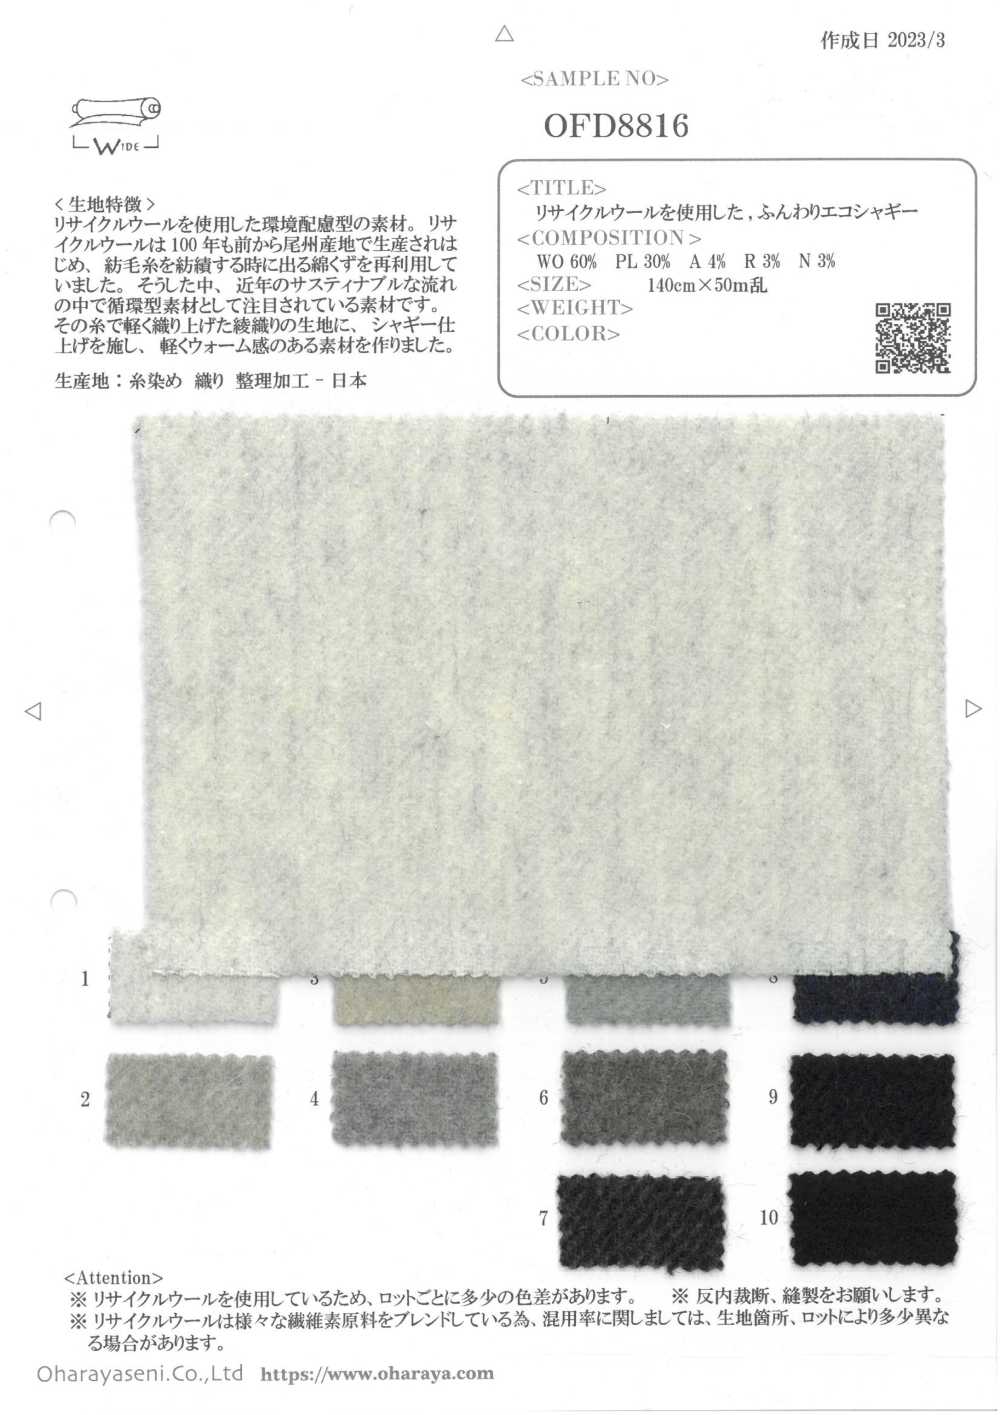 OFD8816 Weicher, Umweltfreundlicher Shaggy Aus Recycelter Wolle[Textilgewebe] Oharayaseni